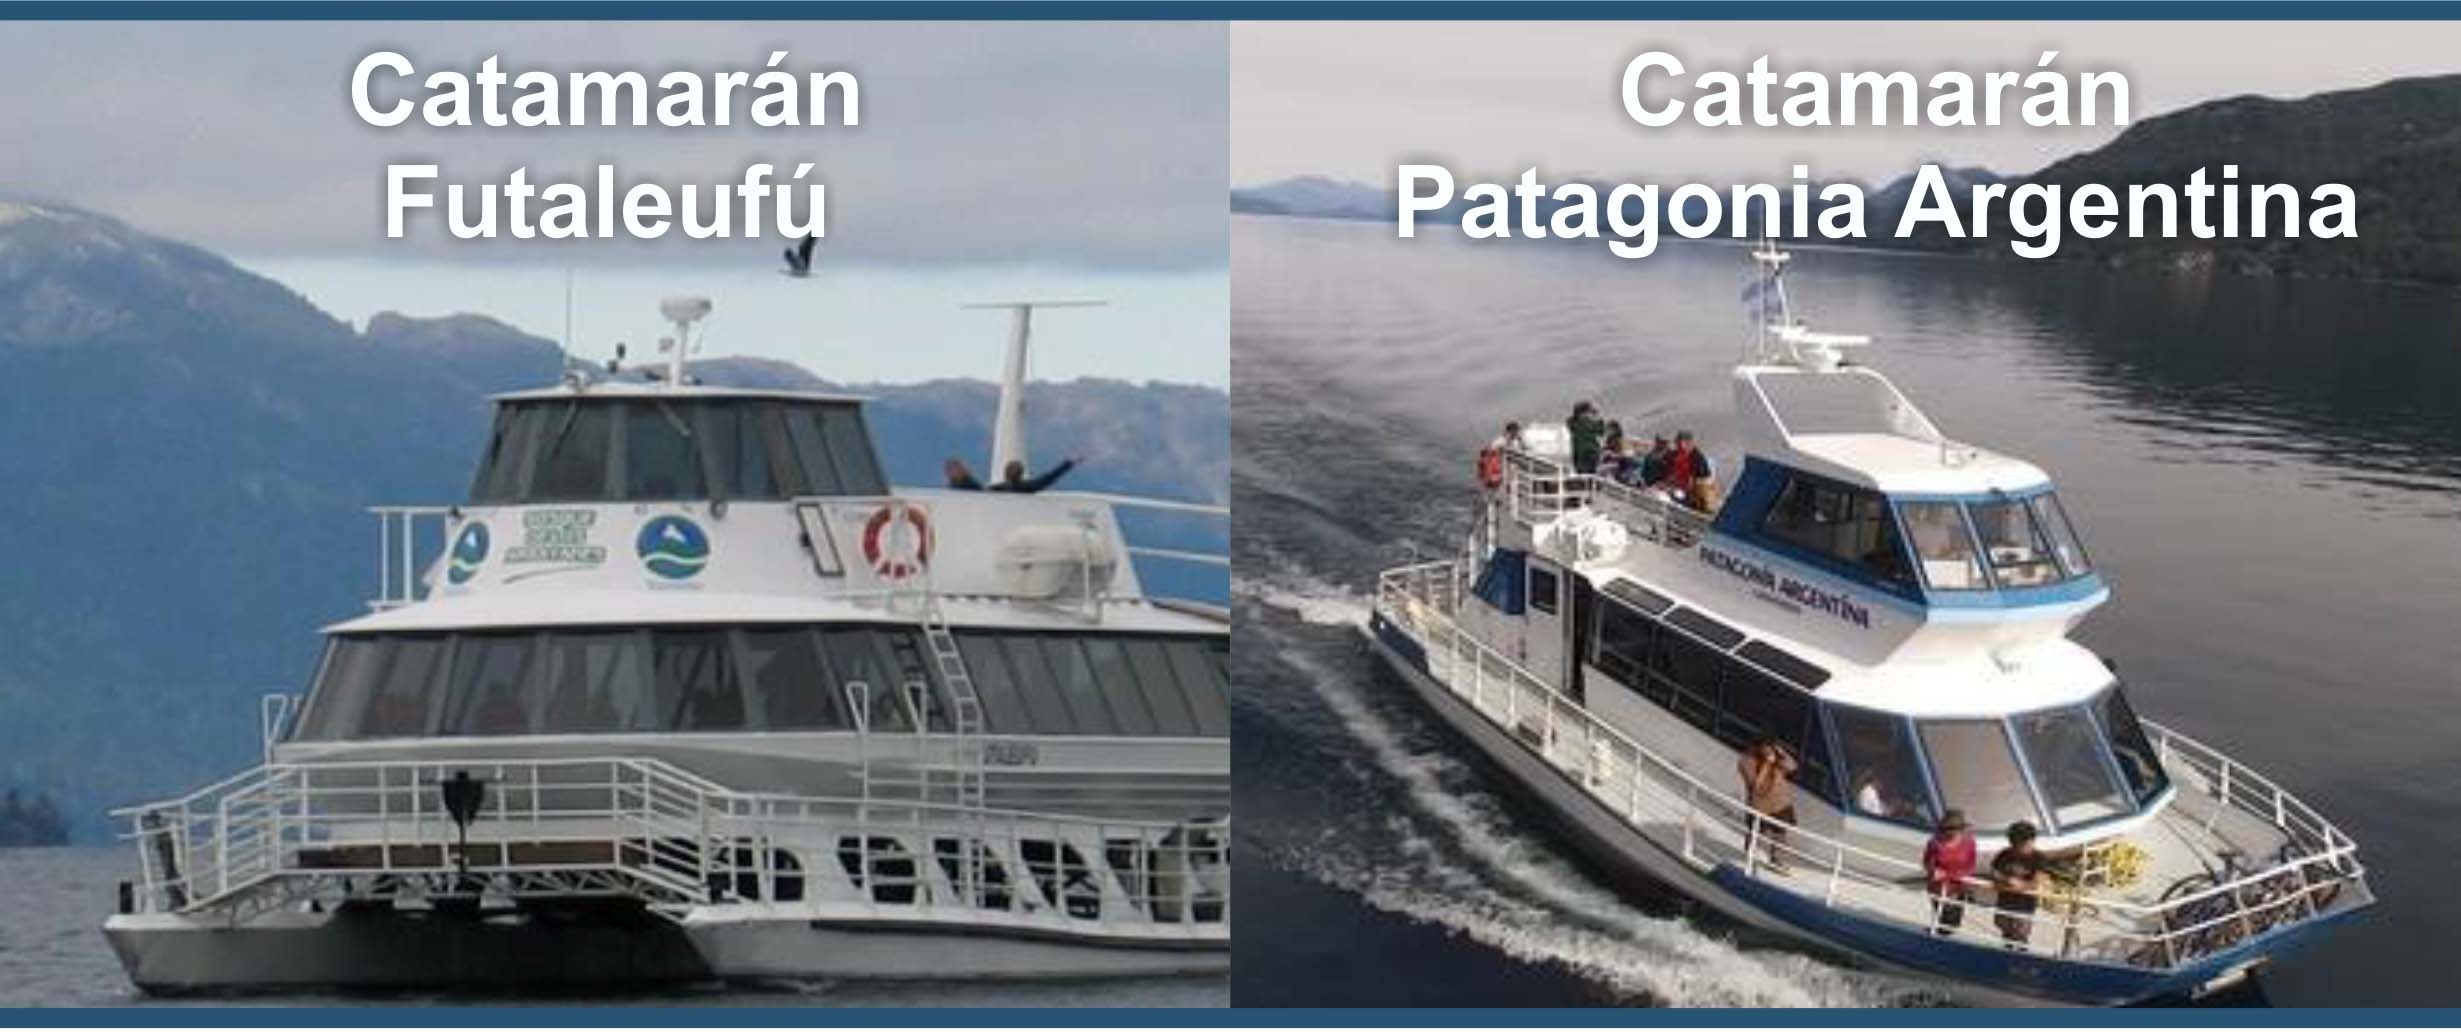 catamaranes